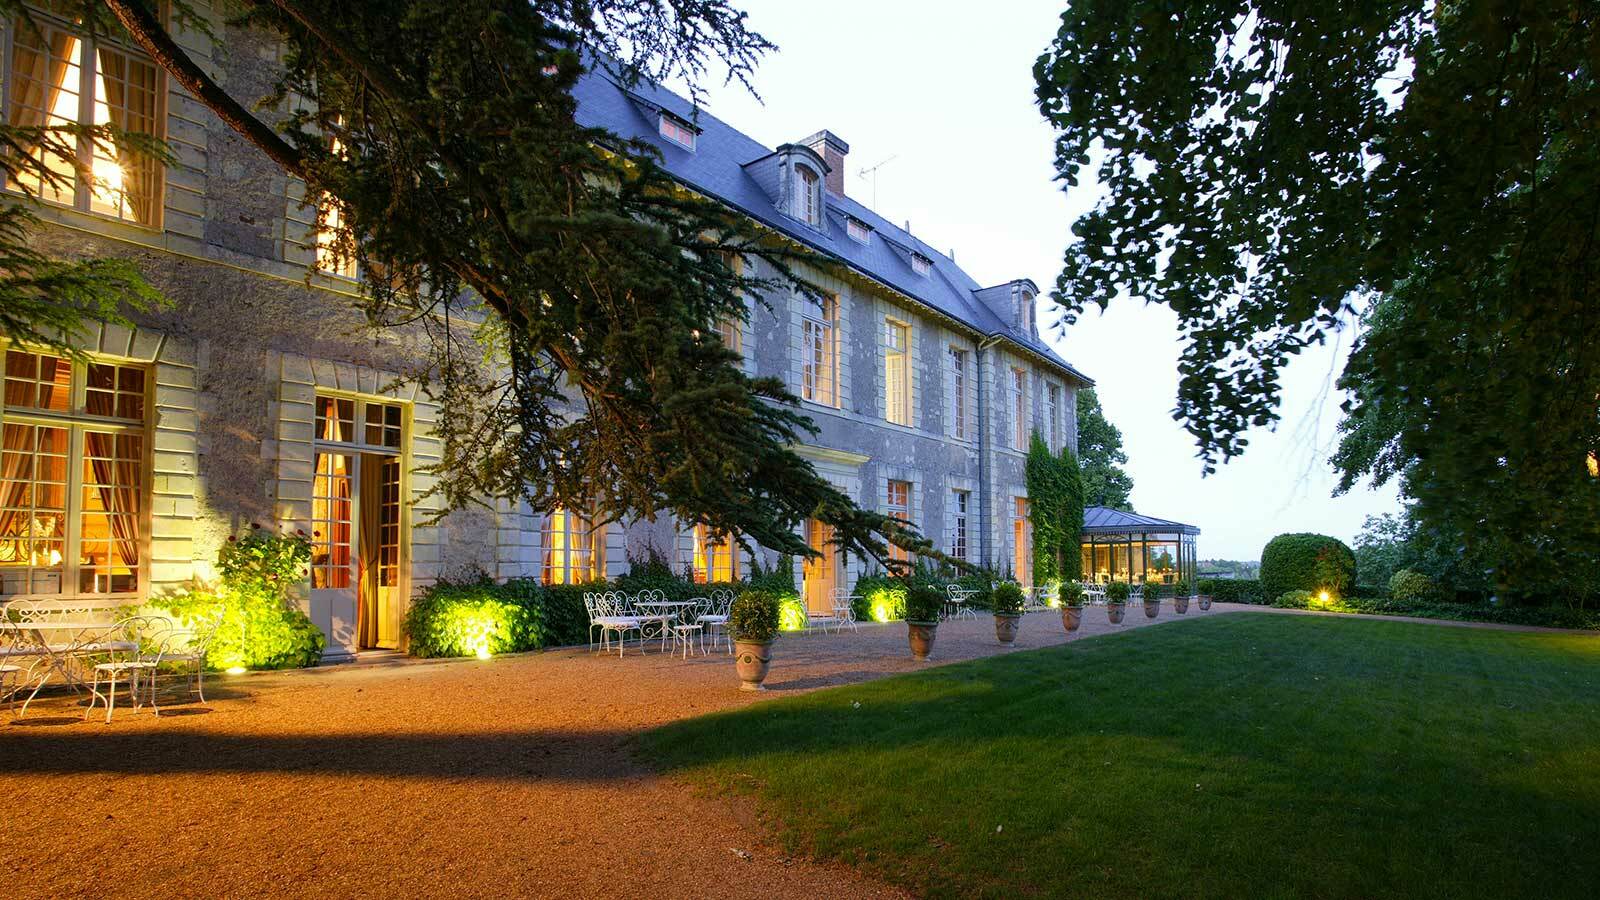 Chateau De Noirieux Briollay Εξωτερικό φωτογραφία